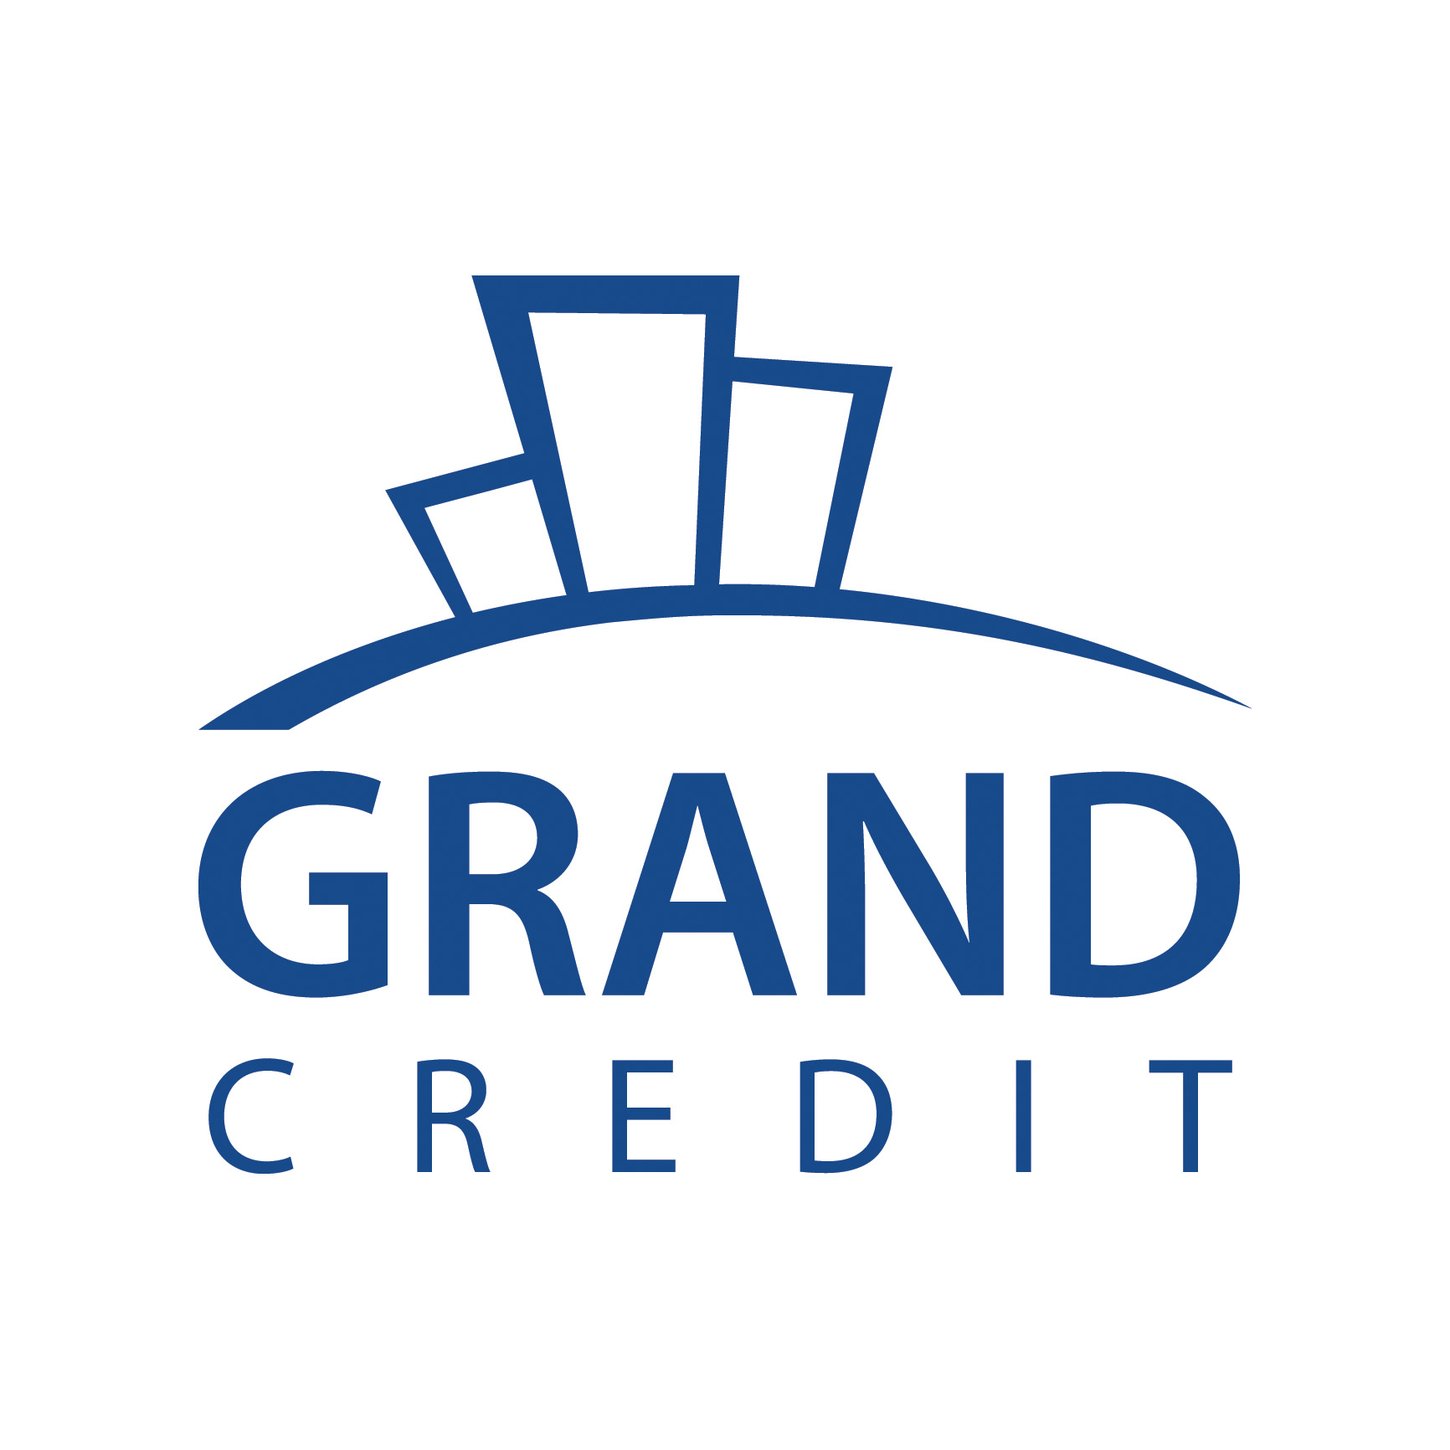 Grand Credit получил лицензию от ЦЗПП